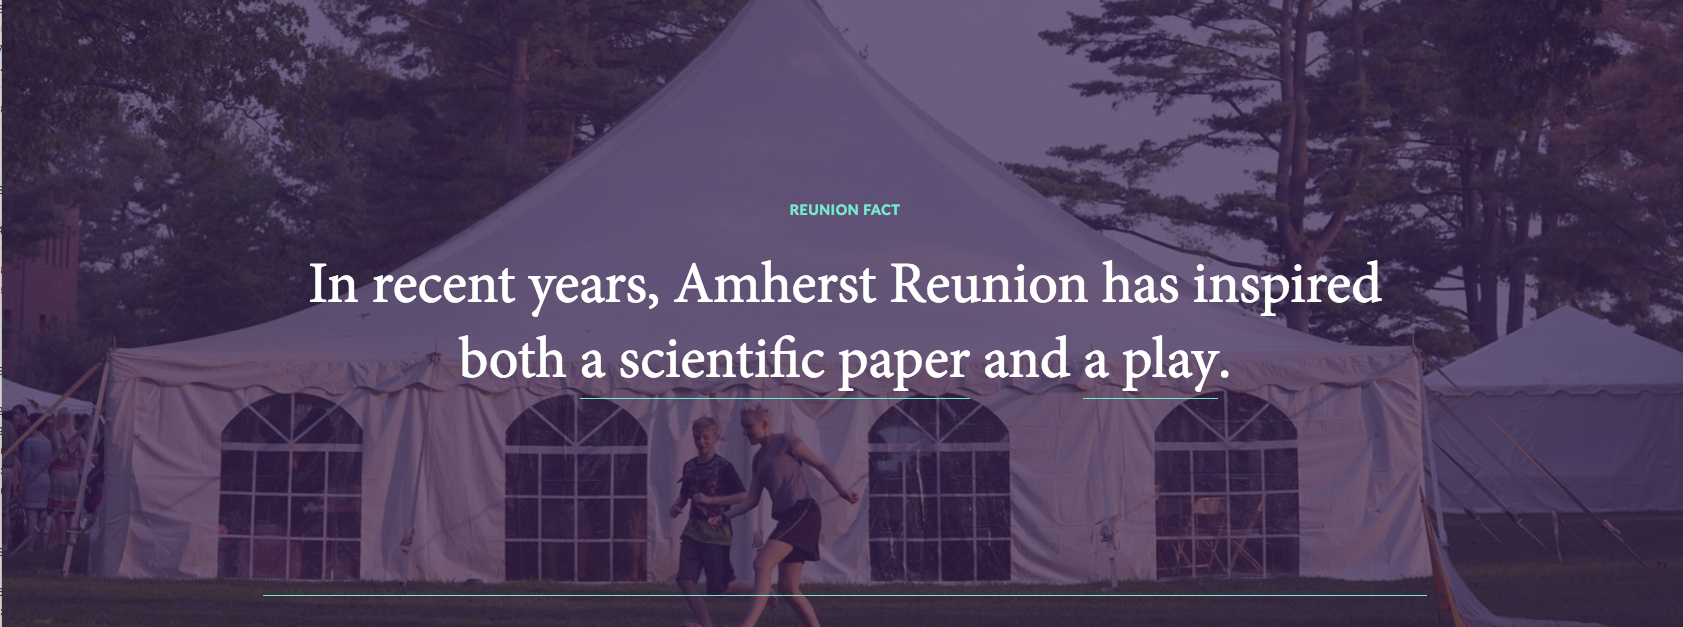 Reunion Fact